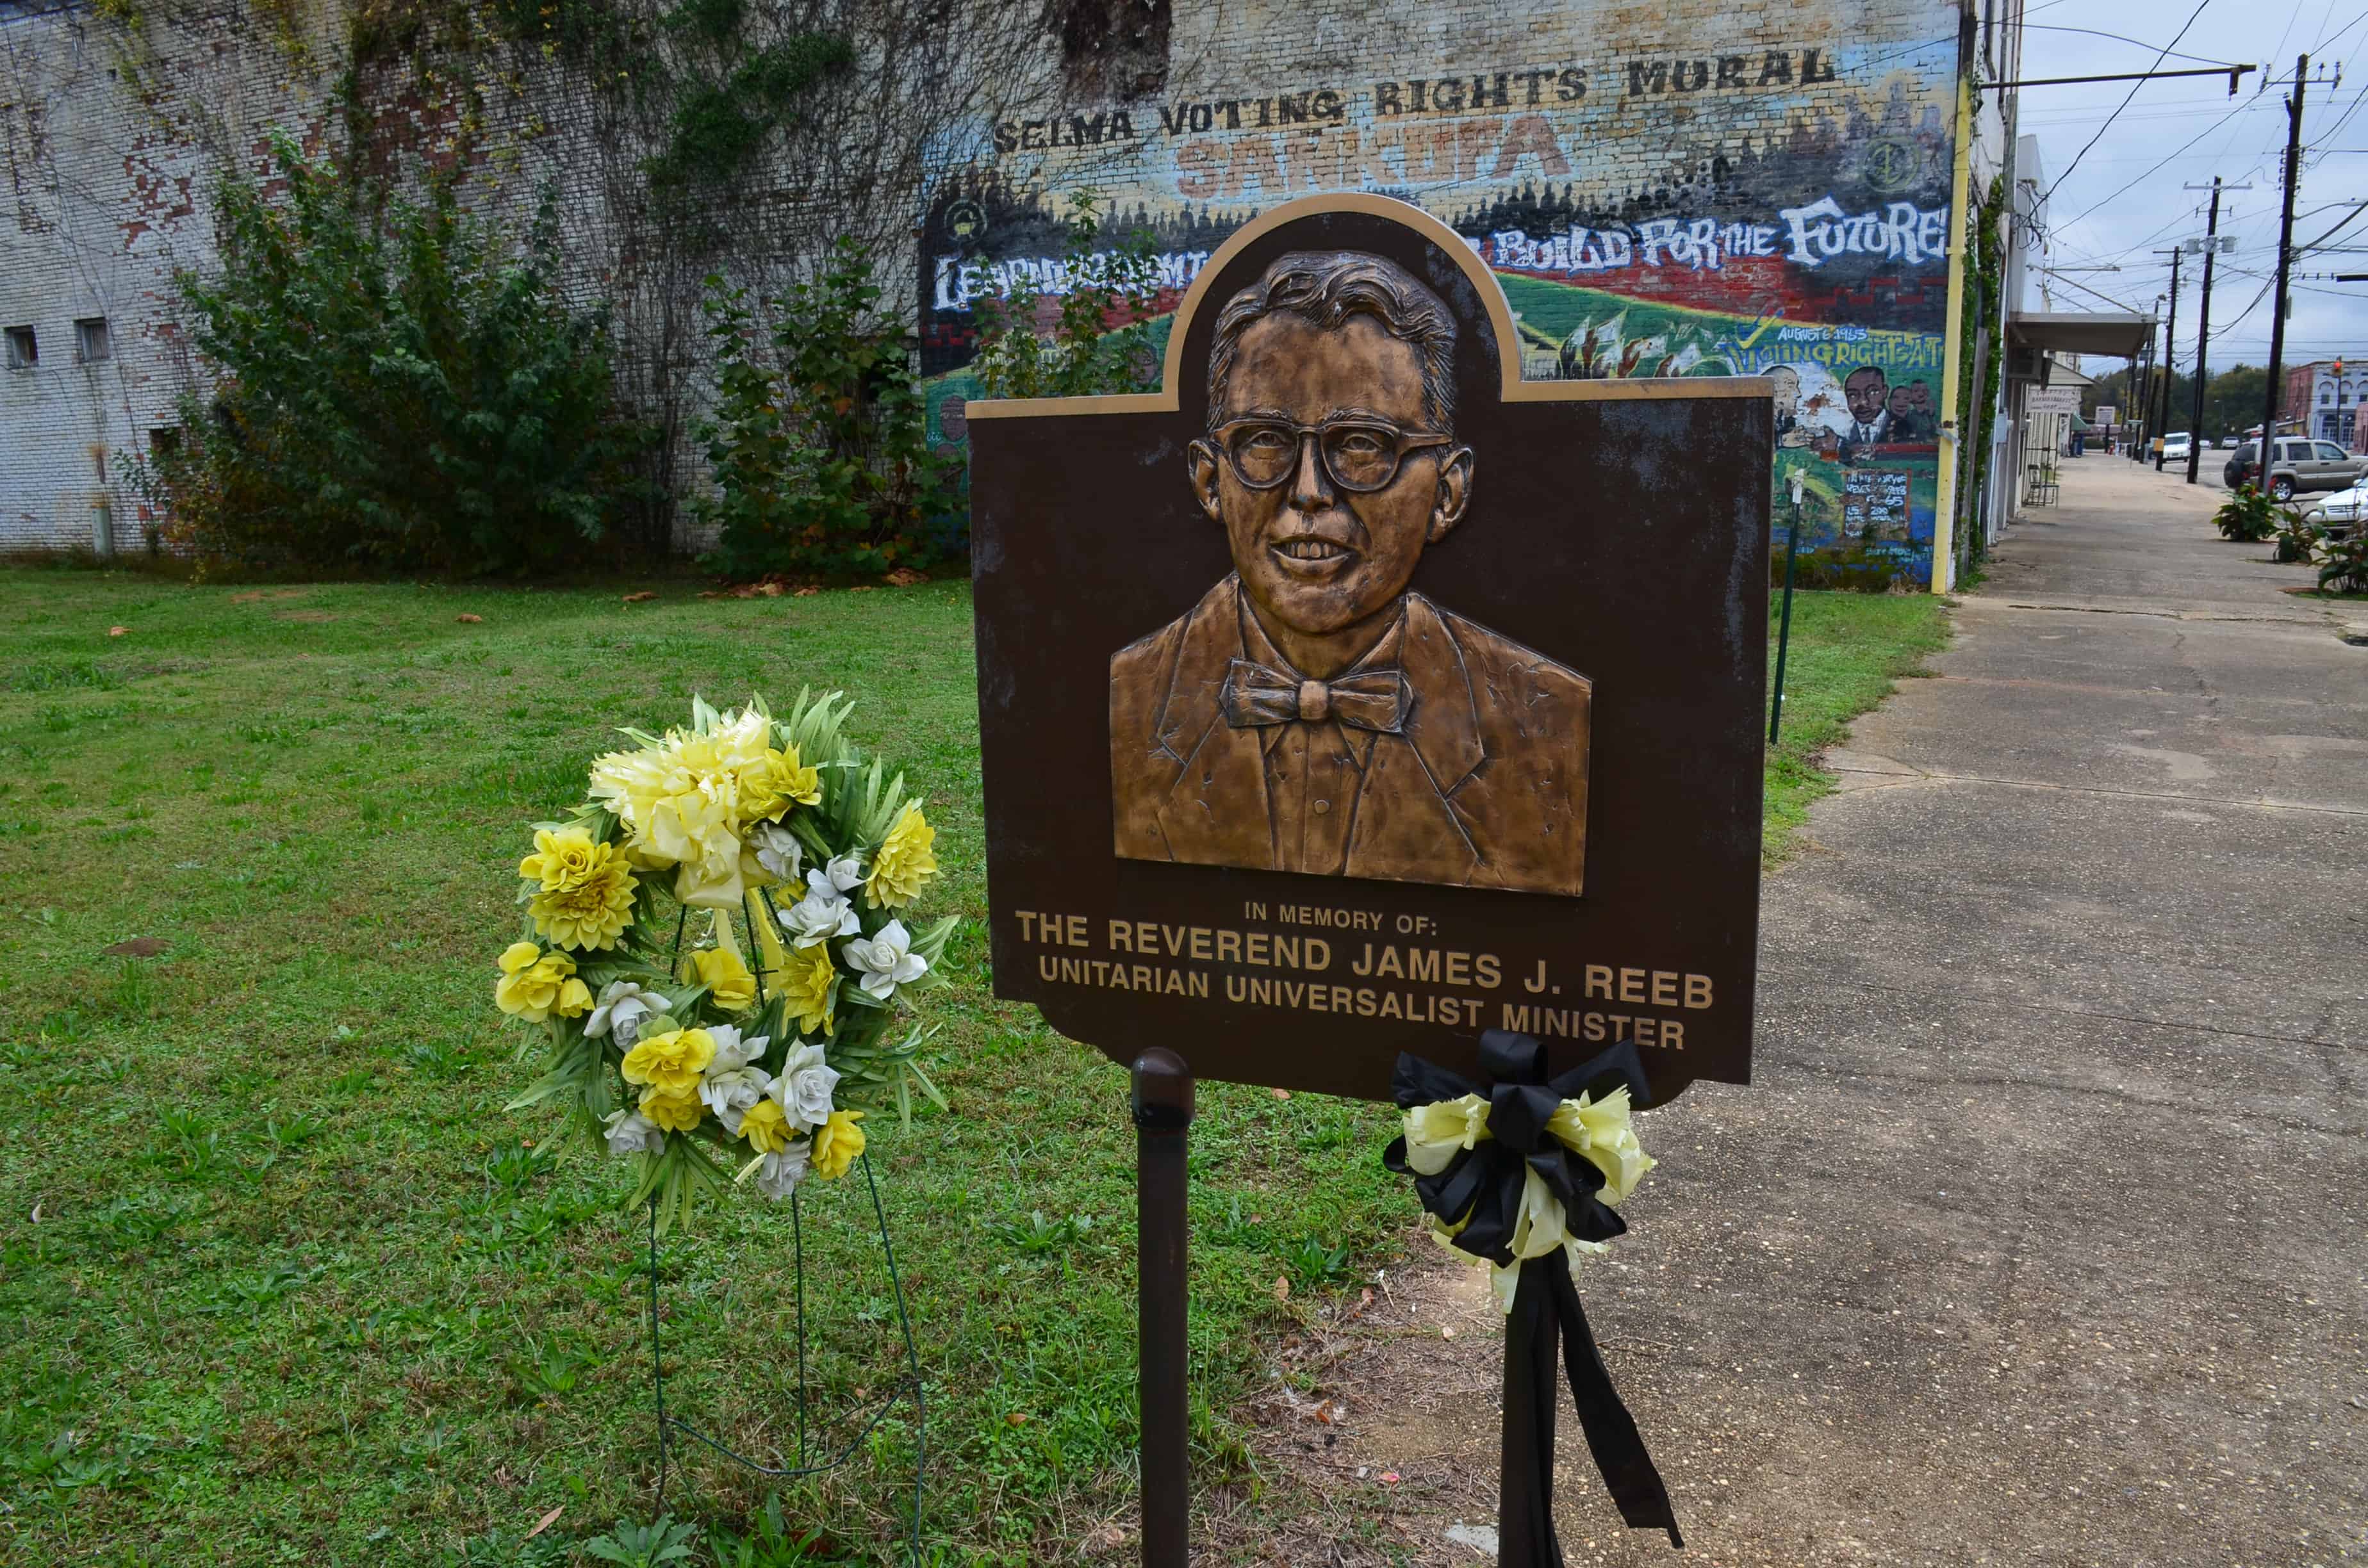 Rev. James J. Reeb memorial in Selma, Alabama